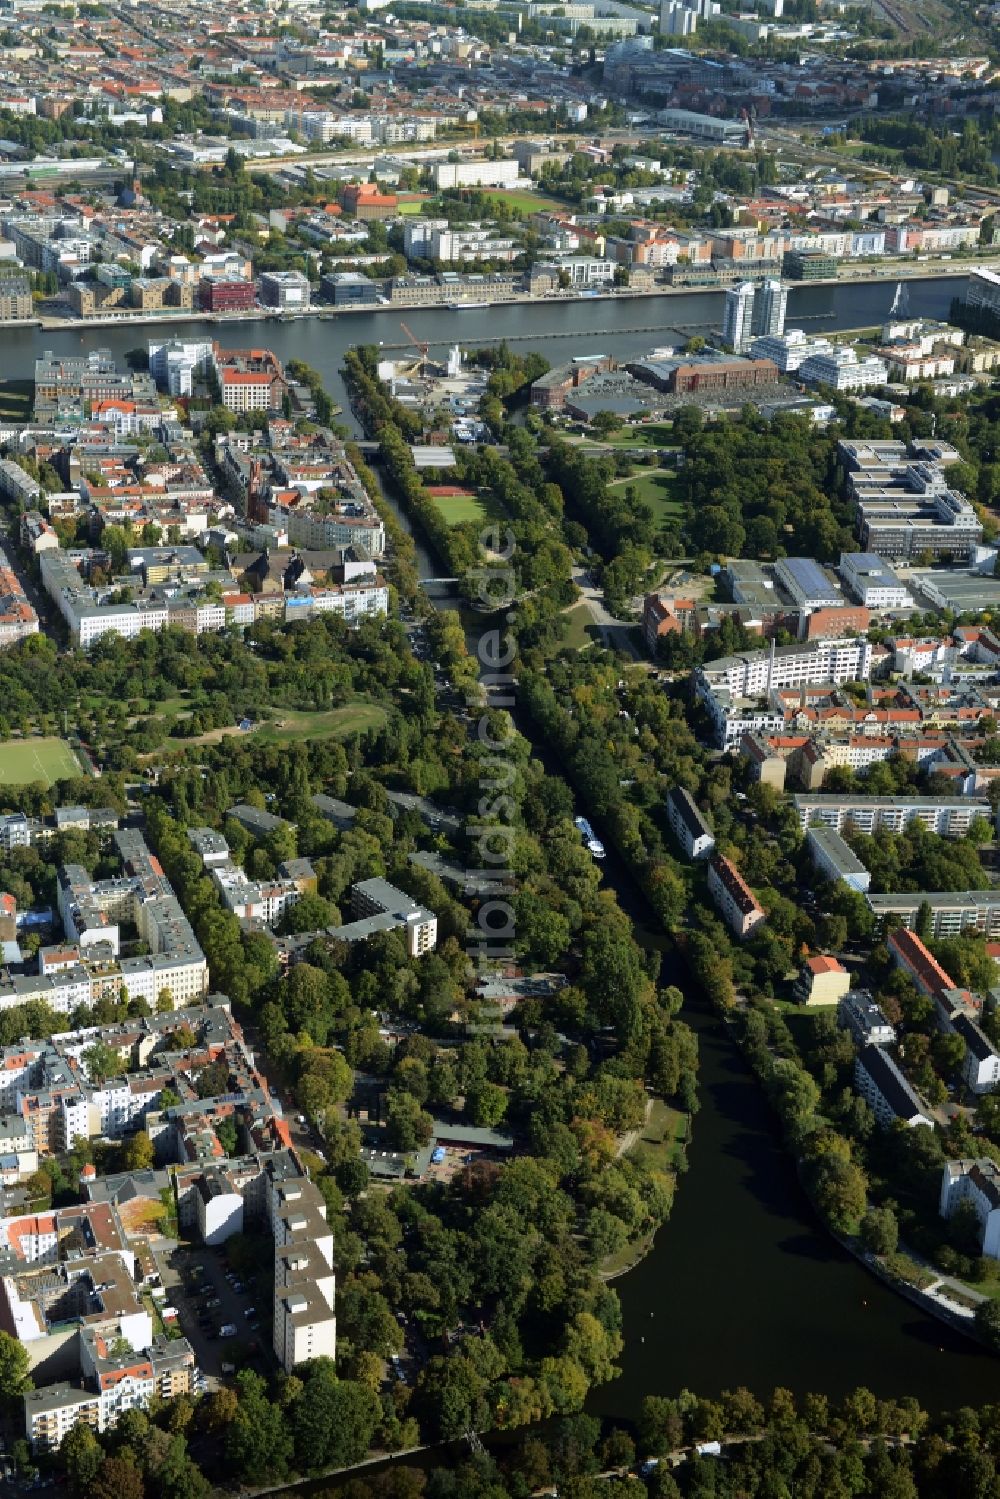 Berlin von oben - Stadtteilansicht des Wohngebietes an den Ufern des Landwehrkanals zwischen den Ortsteilen Kreuzberg und Alt-Treptow in Berlin